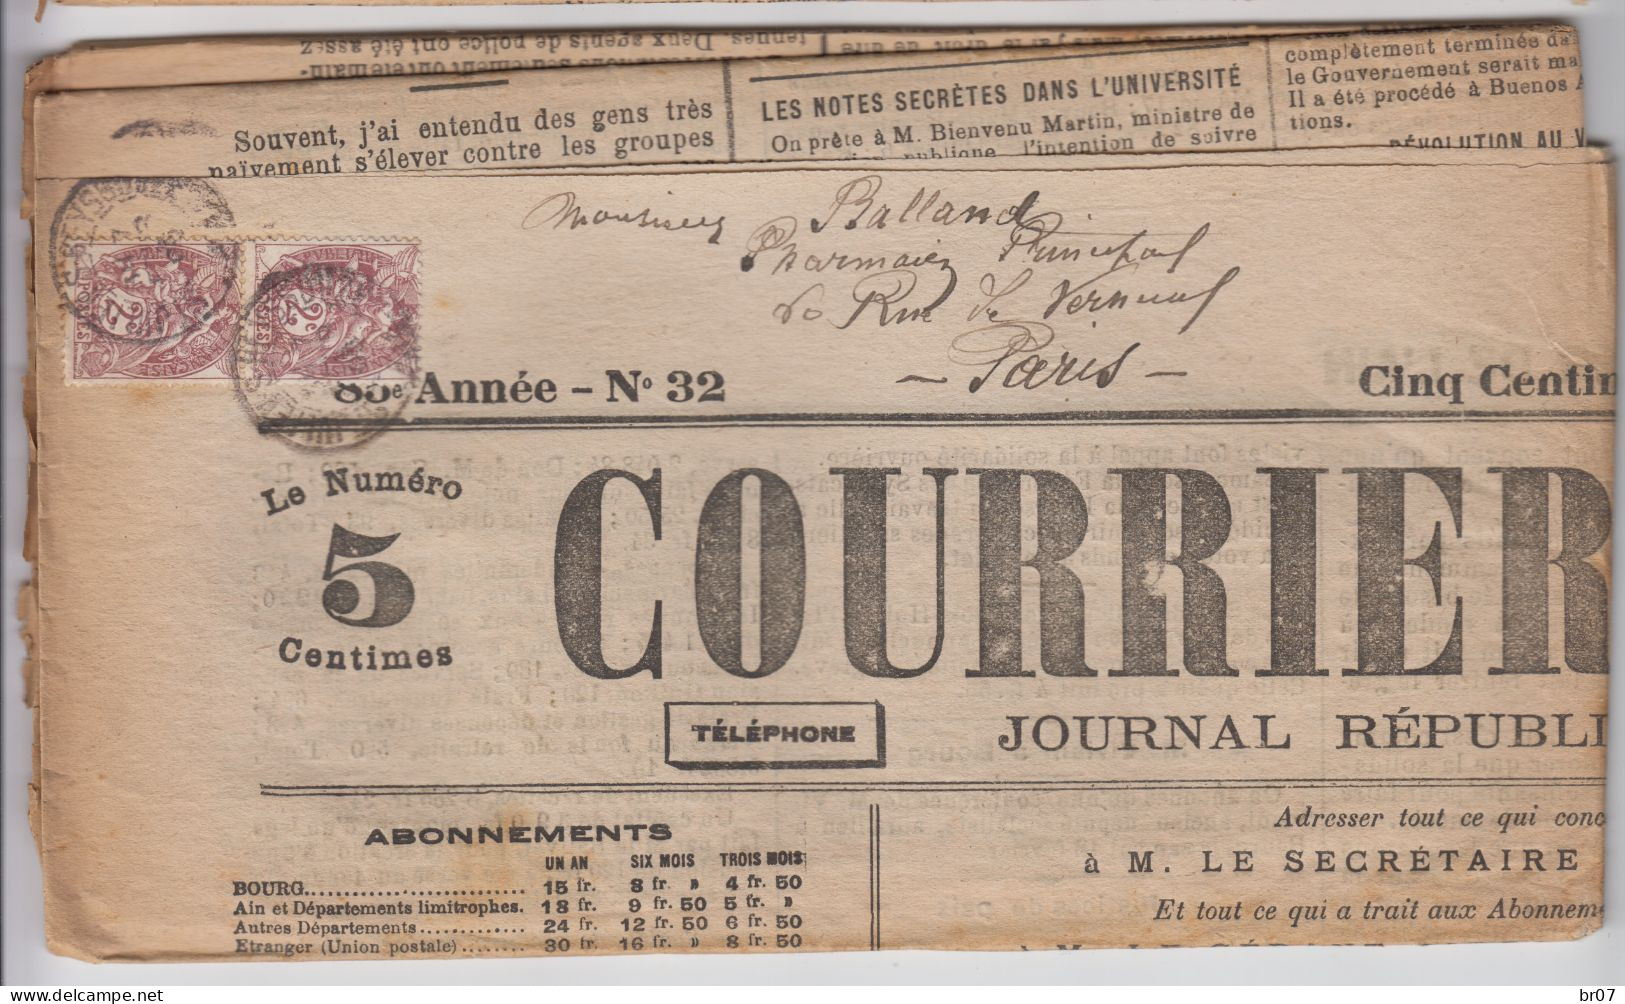 AIN JOURNAL SAMEDI 11 FEVRIER 1905 COURRIER DE L'AIN TARIF 4C TYPE BLANC N°108 X 2 OBLIT T84 ST JULIEN DE REYSSOUZE - Journaux